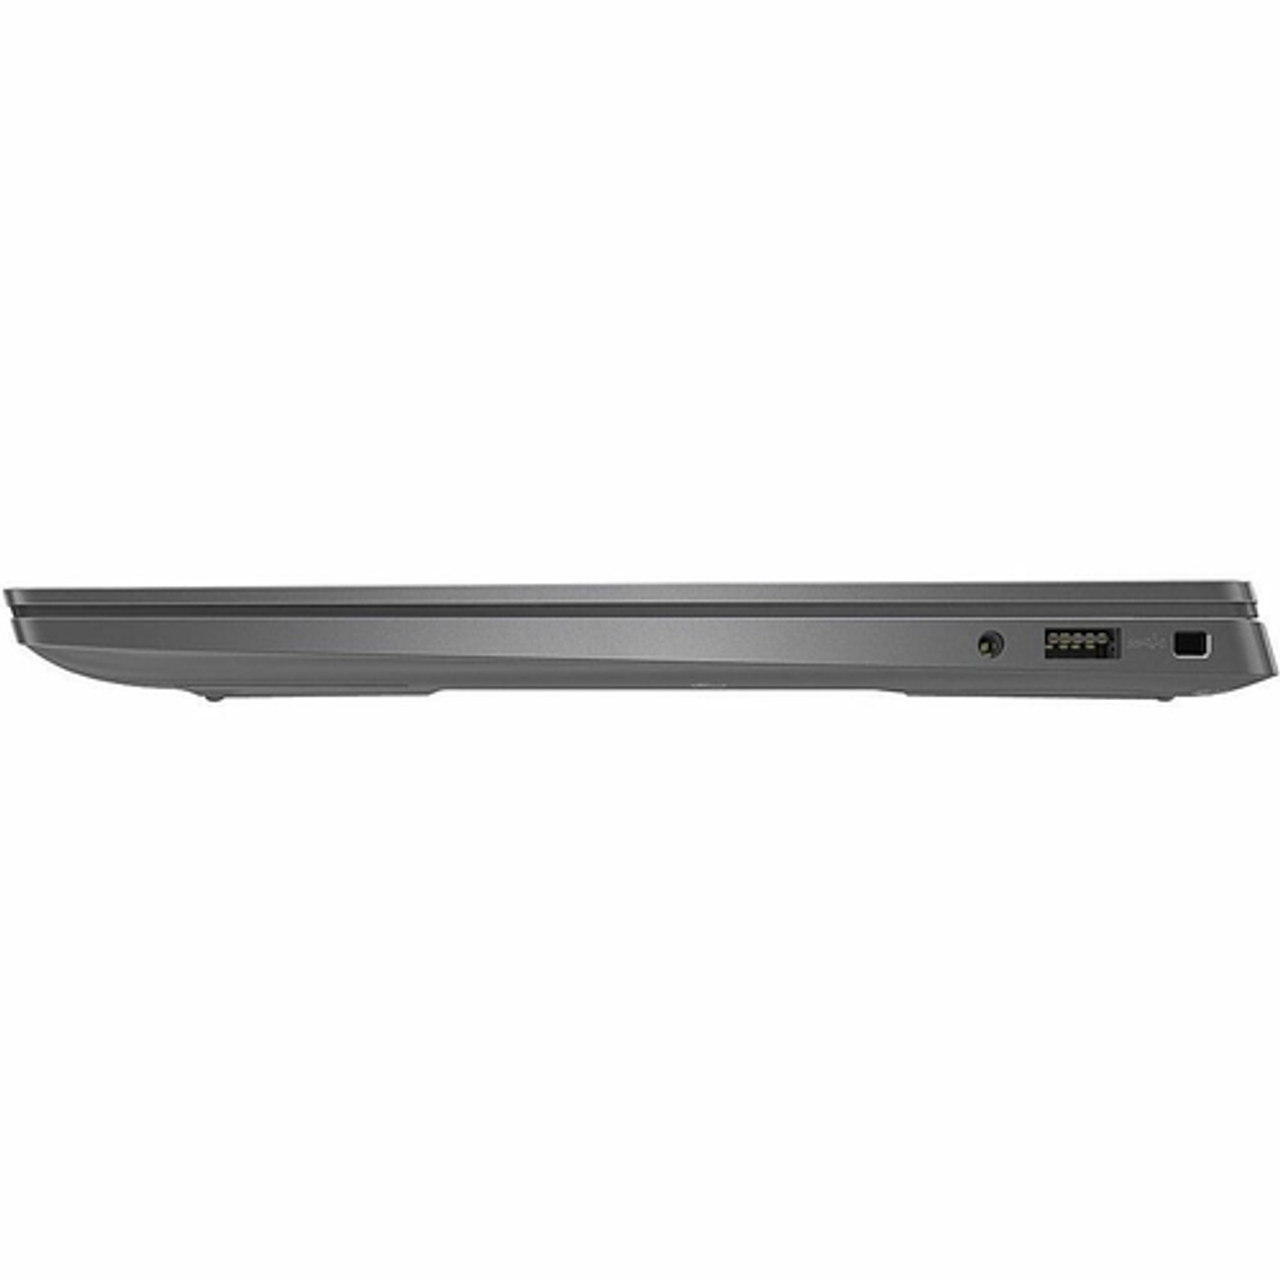 Dell - Latitude 7000 13.3" Laptop - Intel Core i7 with 16GB Memory - 512 GB SSD - Aluminum Titan Gray